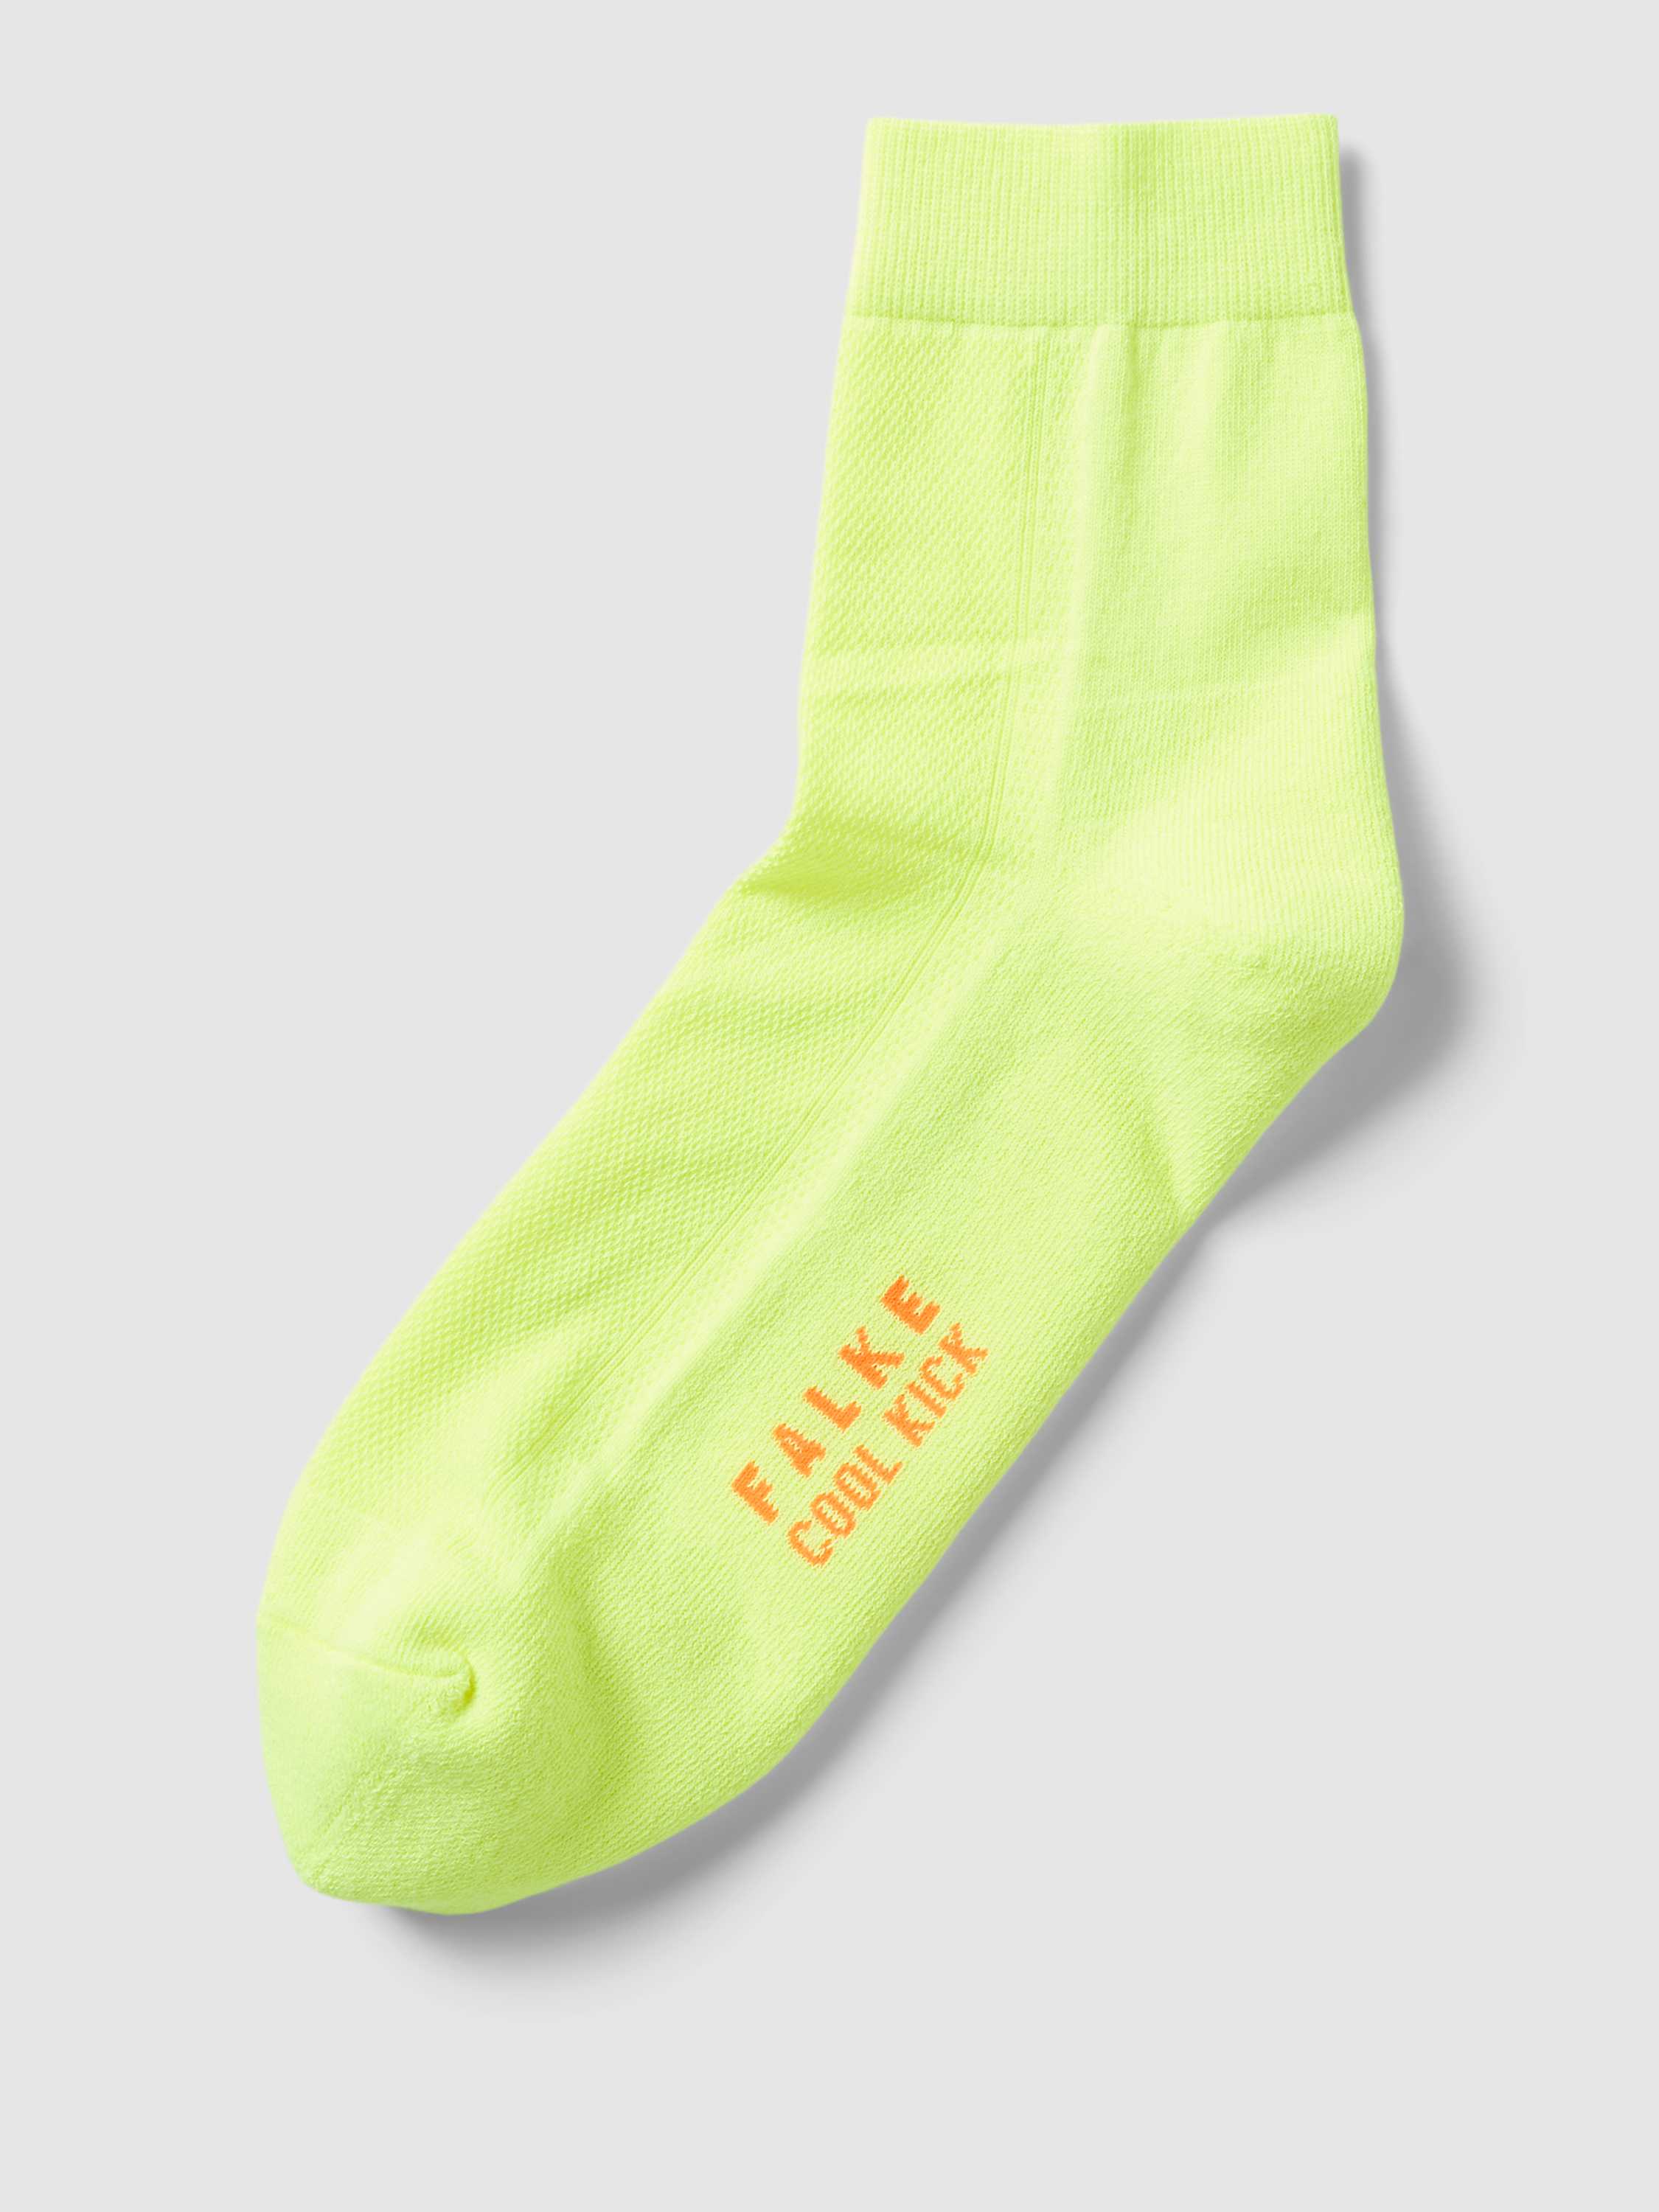 Socken mit elastischem Rippenbündchen Modell 'Cool Kick'